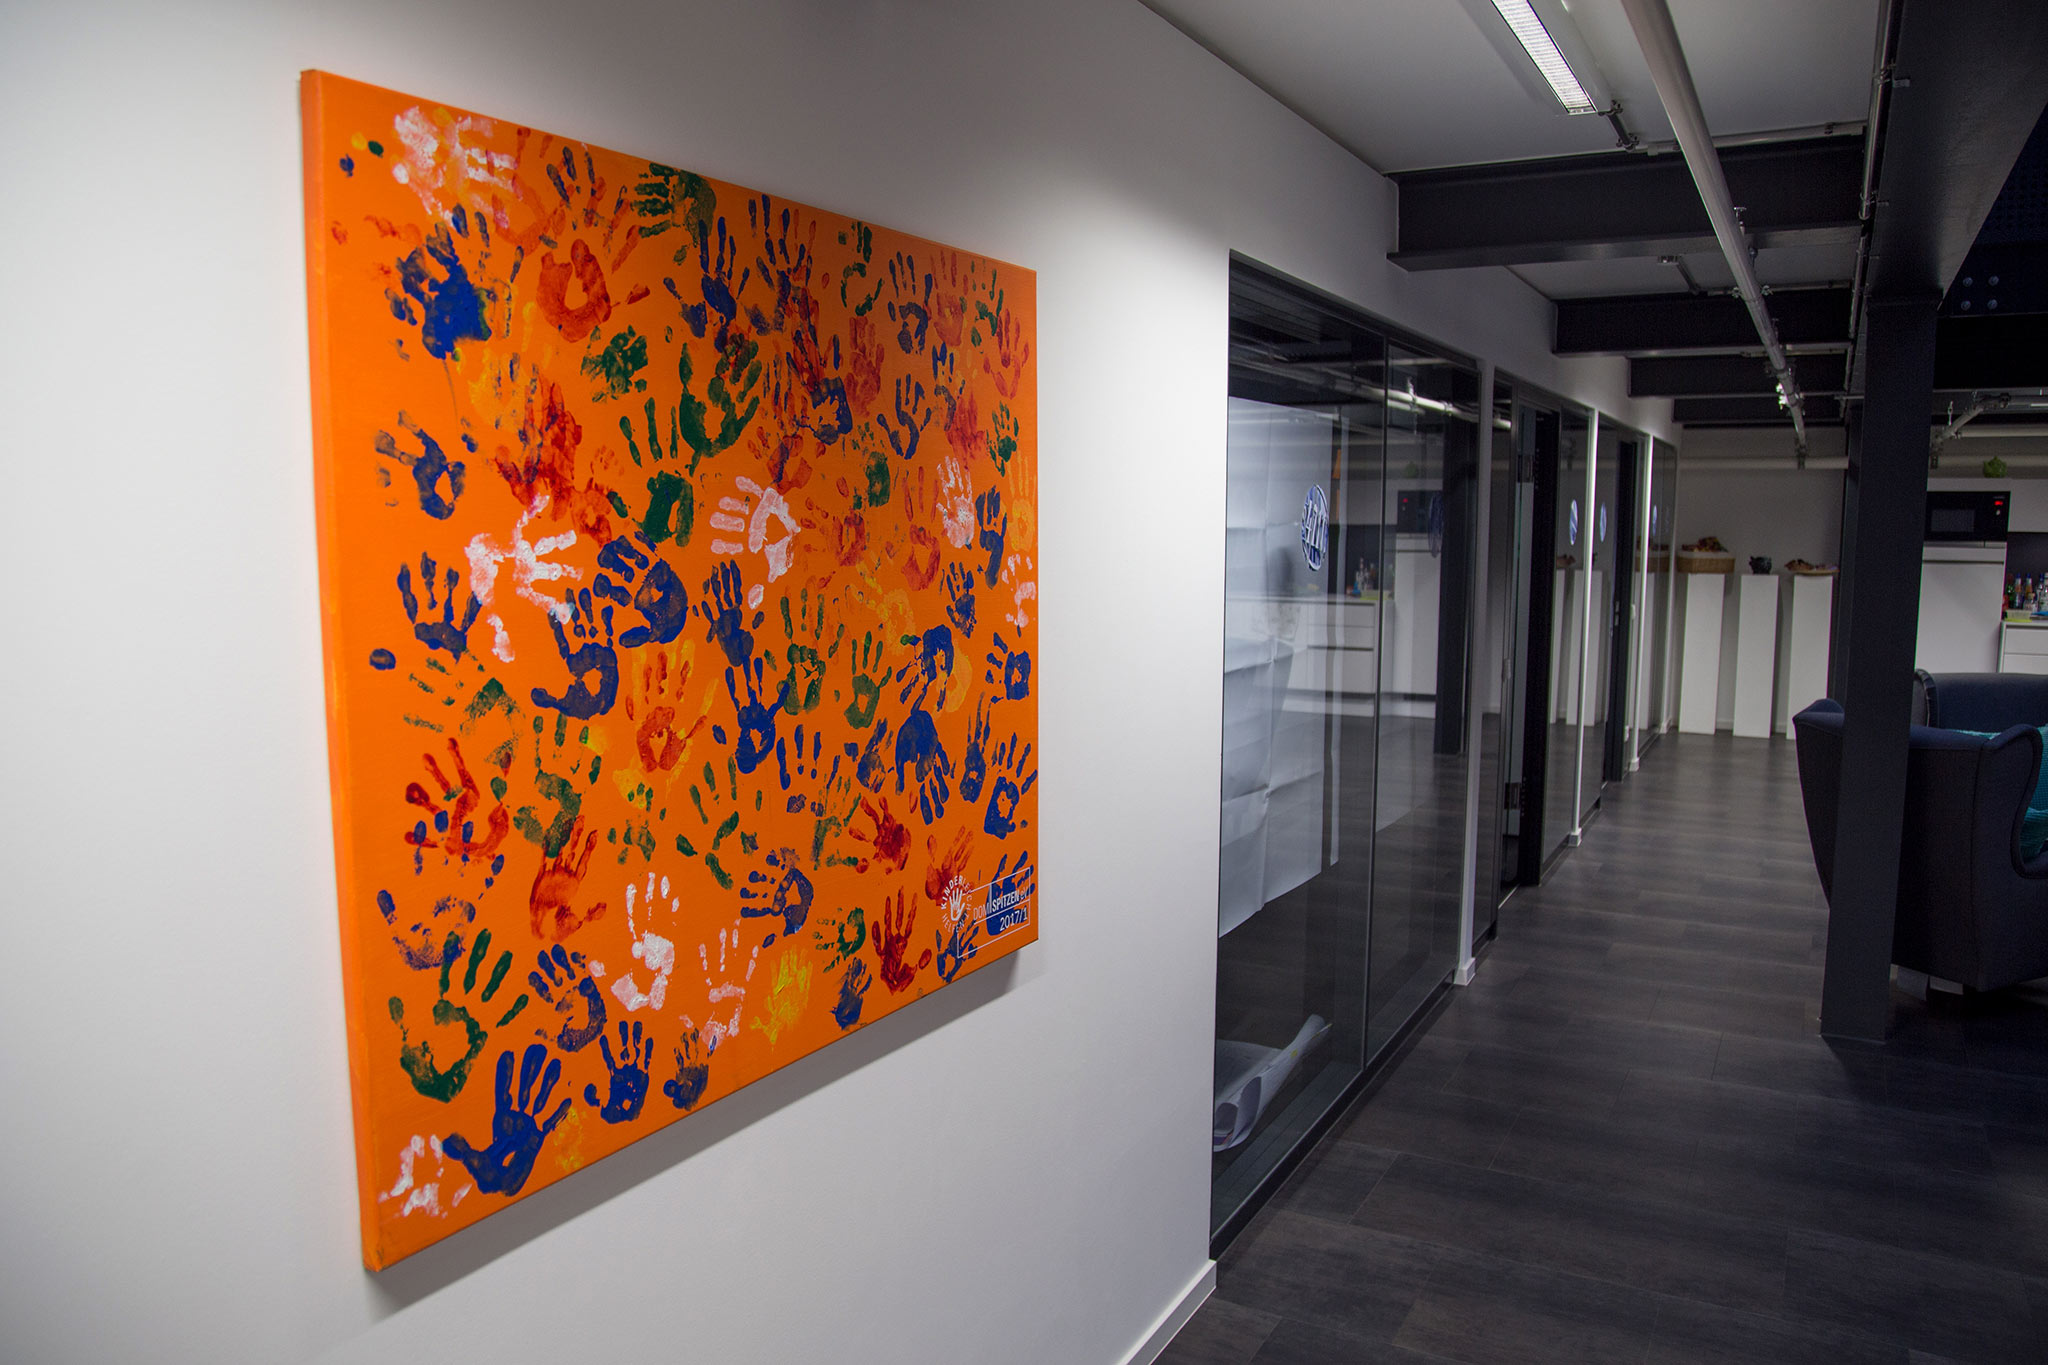 Ein Bild (orangener Hintergrund mit bunten abdrücken von Kinderhänden) hängt im Büro der Agentur Wunderman. Domspitzen eV.